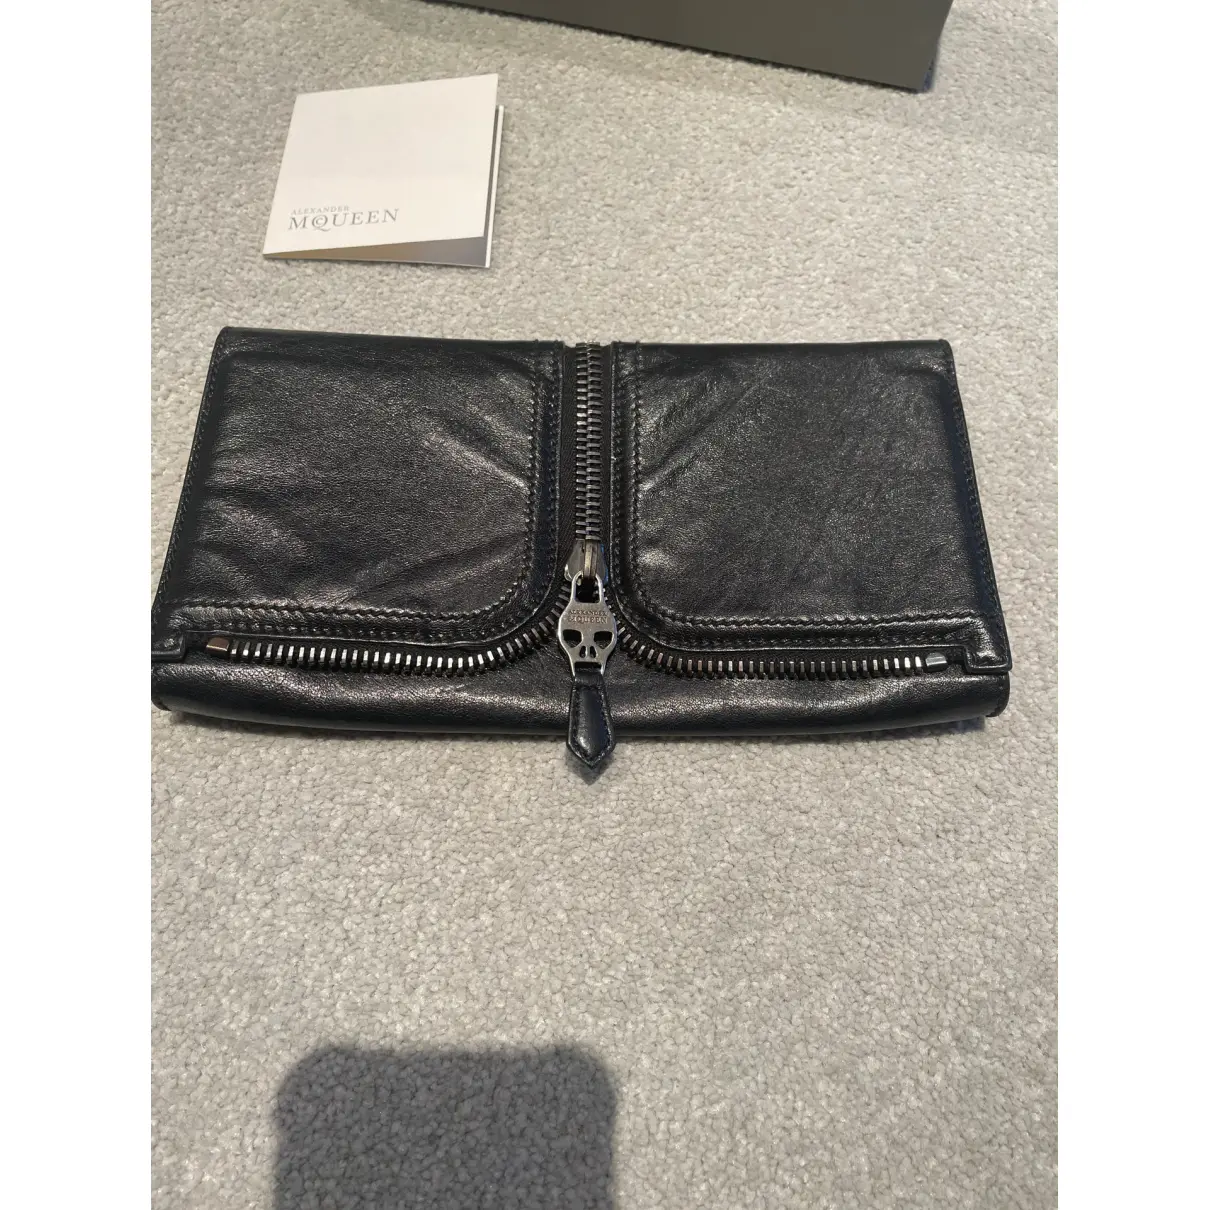 Buy Alexander McQueen Leather clutch bag online